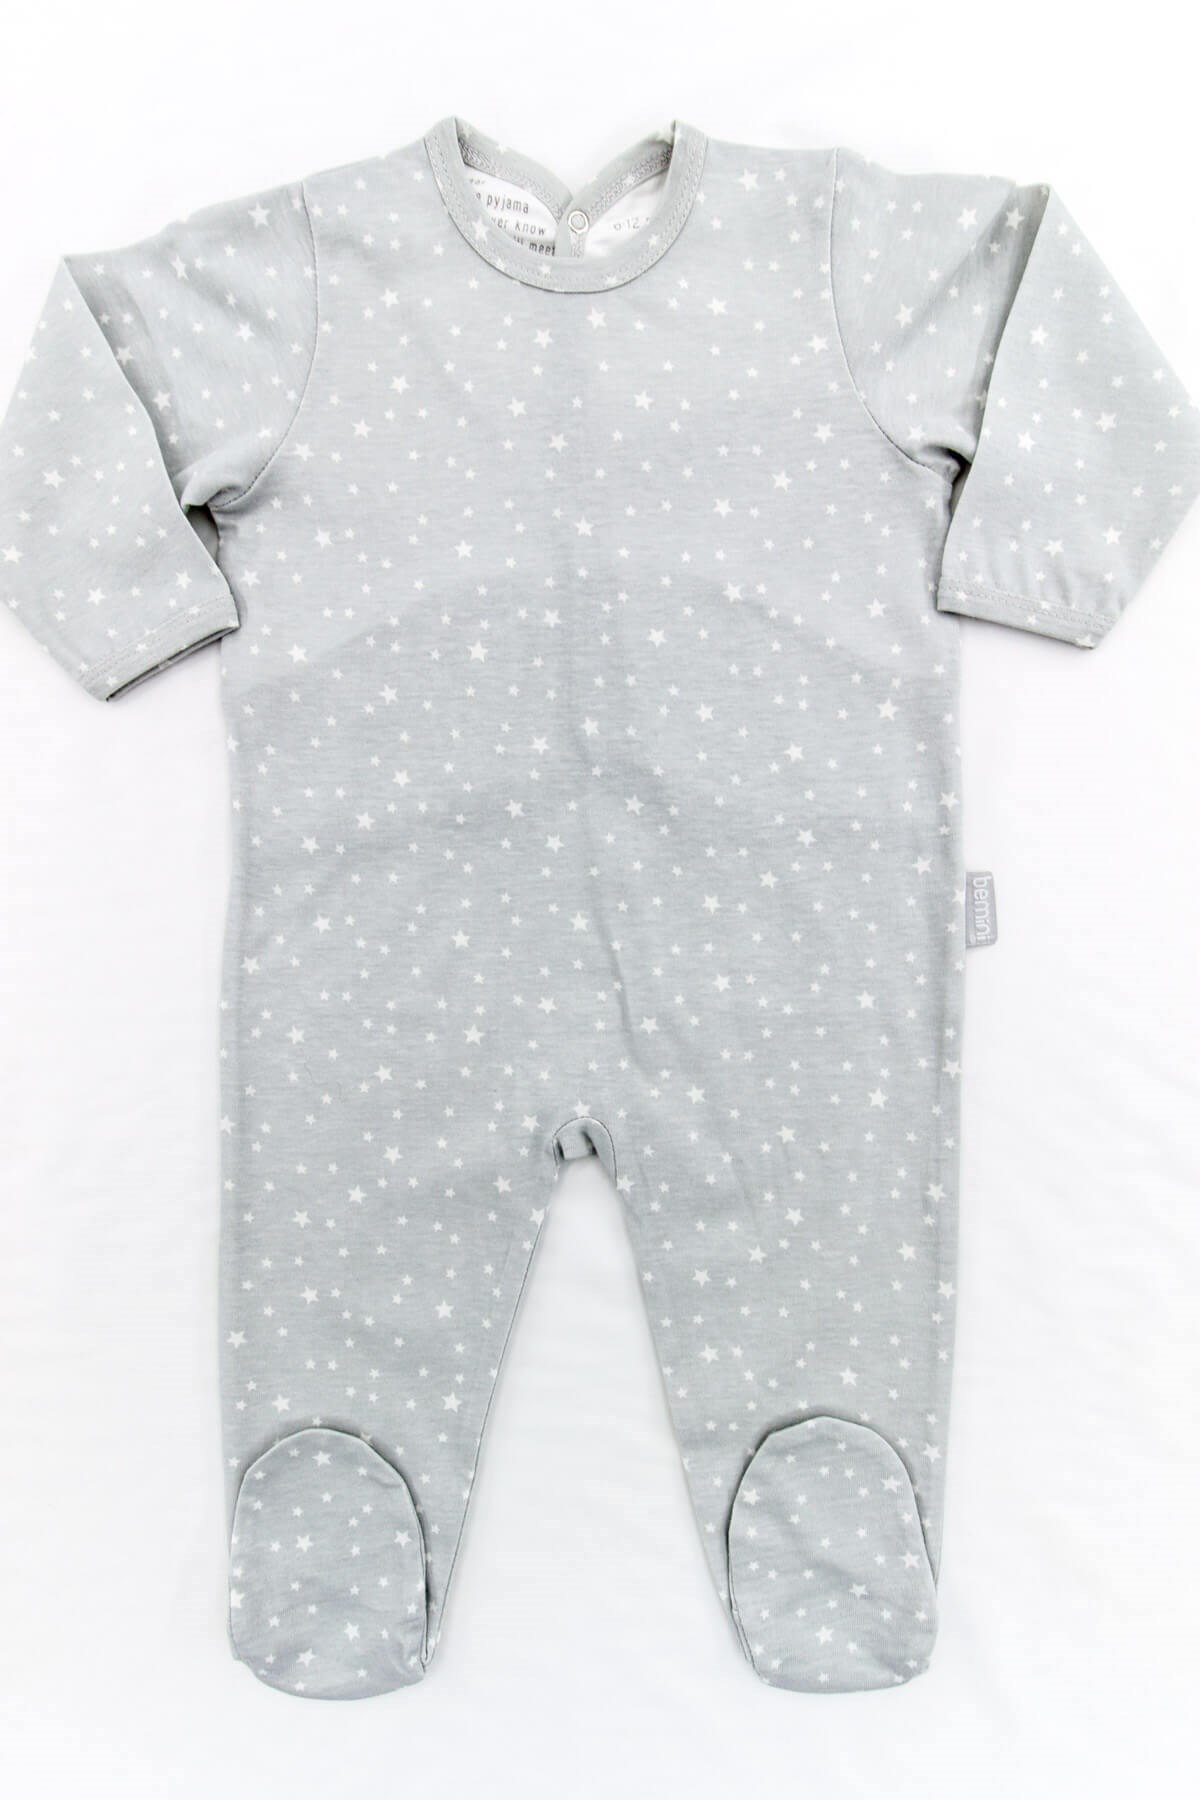 Gri Yıldızlı Arkadan Çıtçıtlı Erkek Bebek Tulumu | Bebek Pijama Tulumu |  Uygunbebe.com